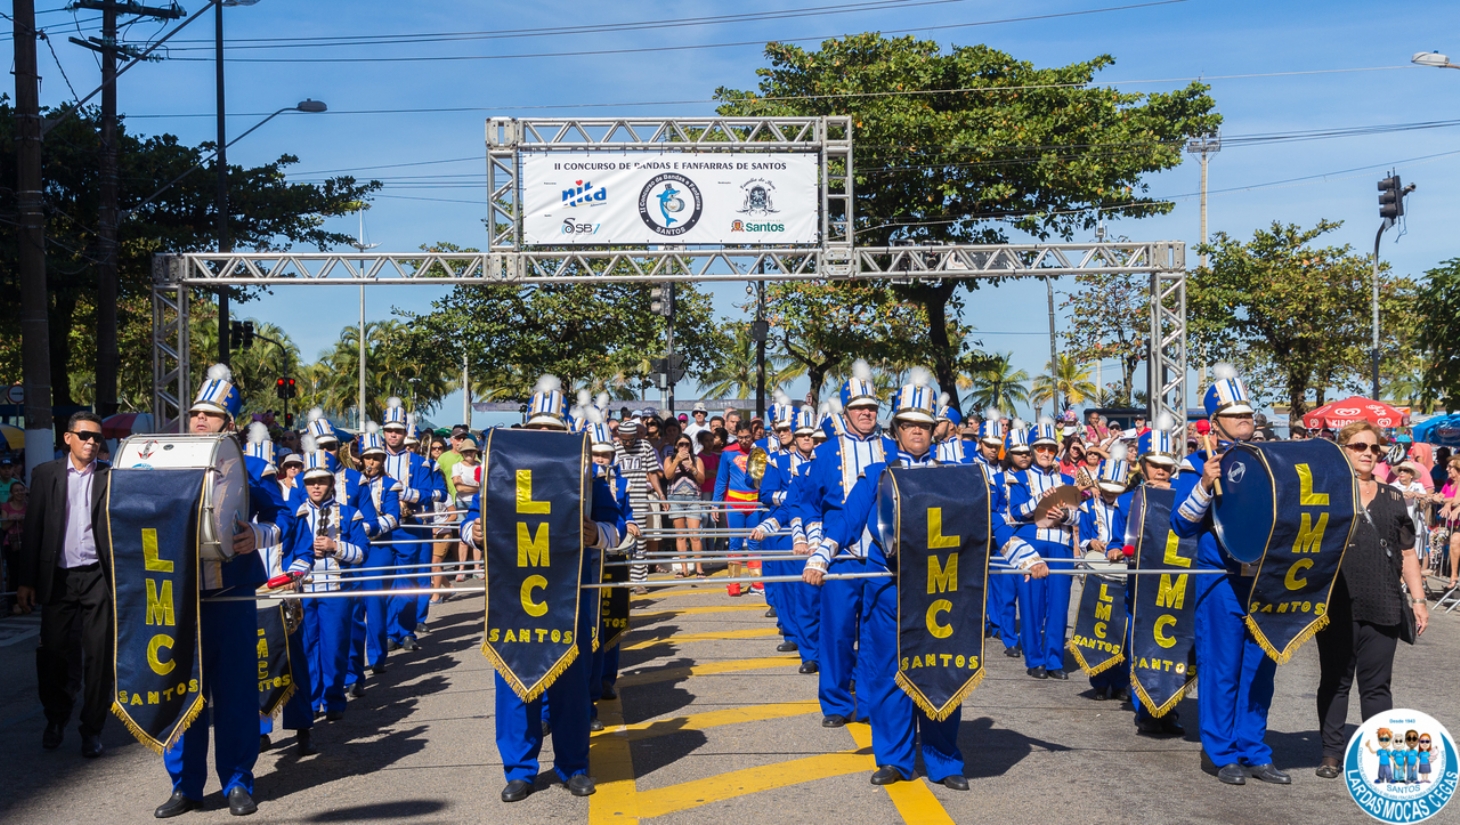 Concurso de bandas e fanfarras em Santos | Jornal da Orla